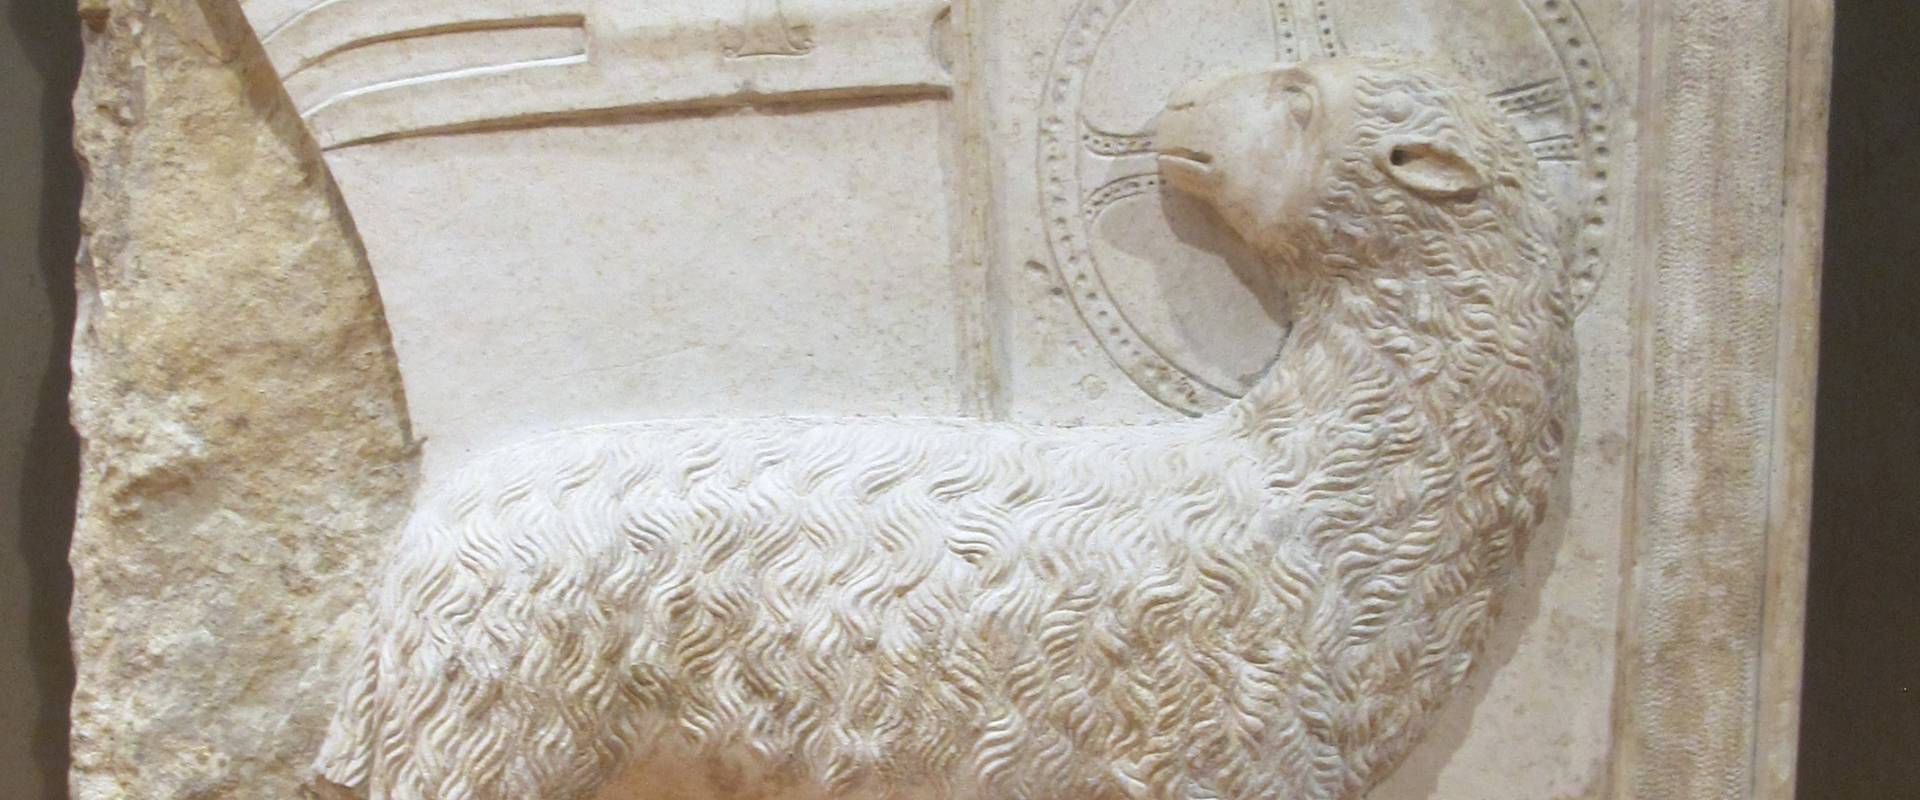 Maestro campionese, agnello mistico, 1200-1250 ca. foto di Sailko